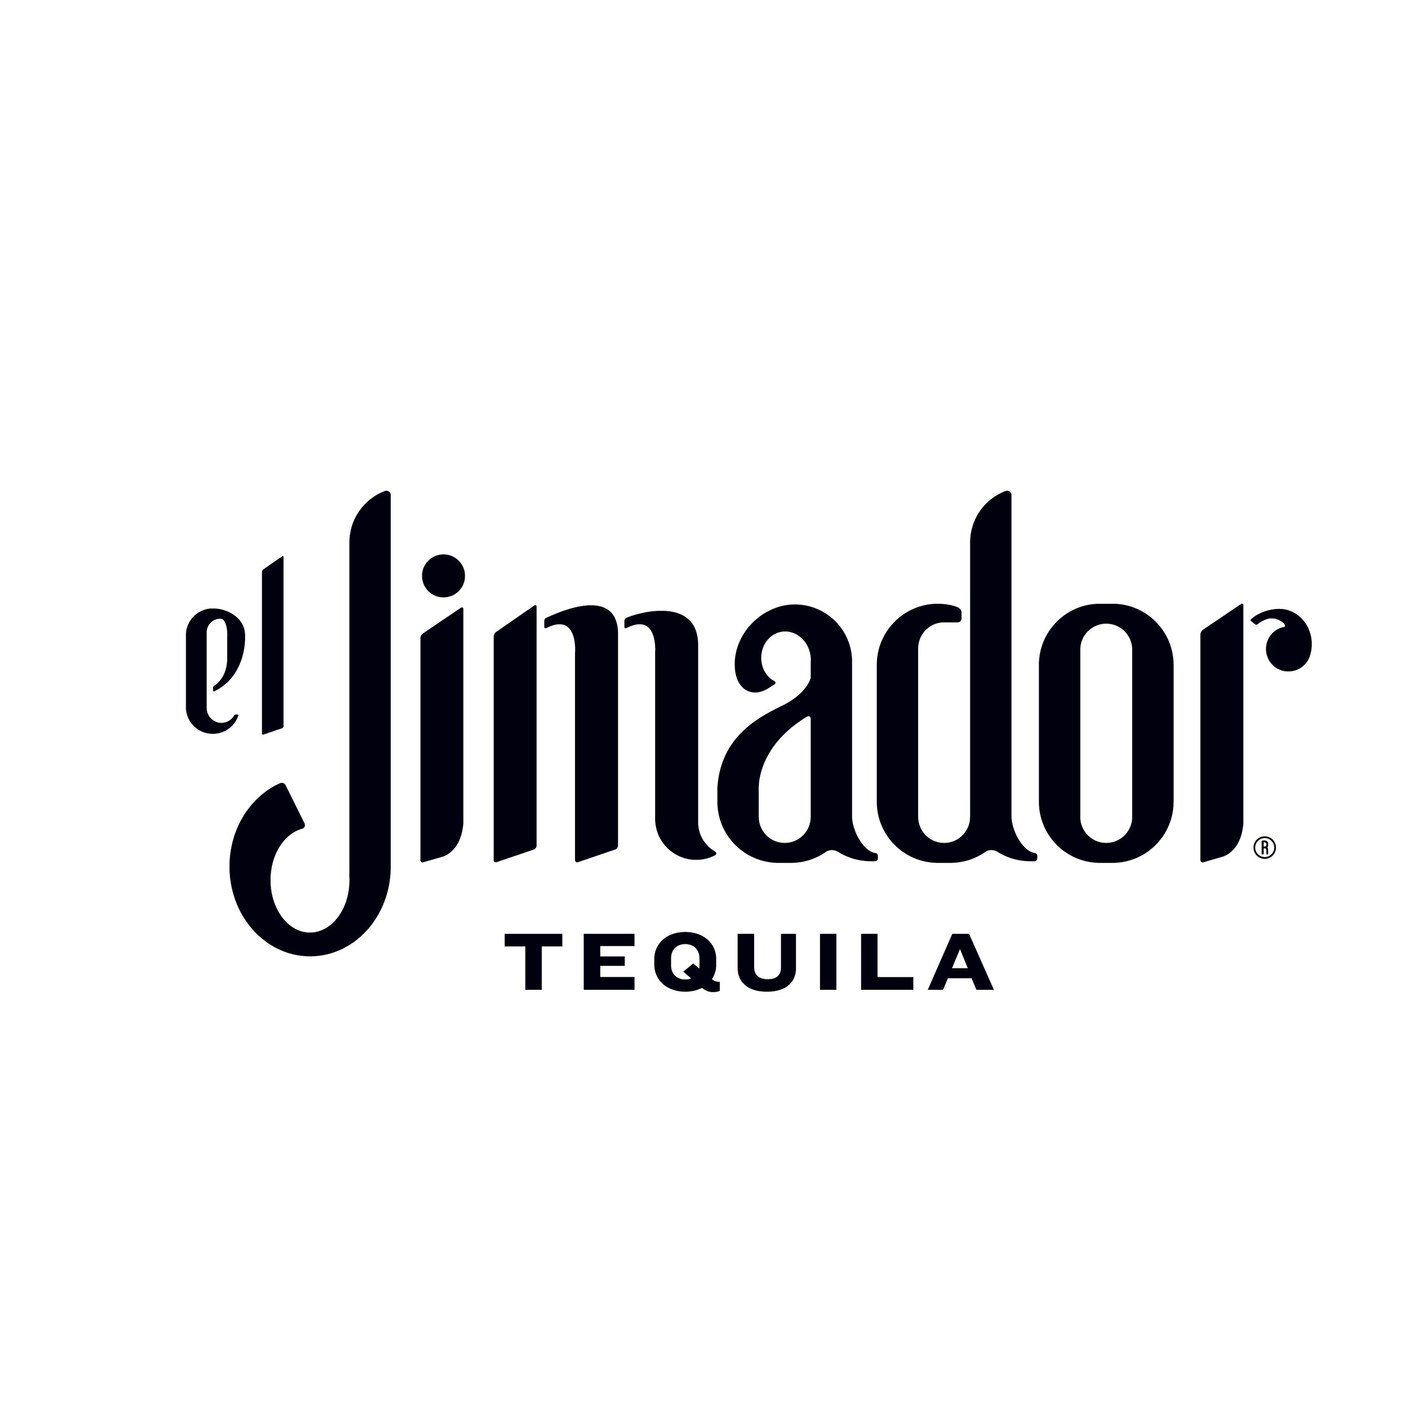 el Jimador Tequila Teams Up With Latino Beauty Gurus To Celebrate Culture,  Community During Día de los Muertos